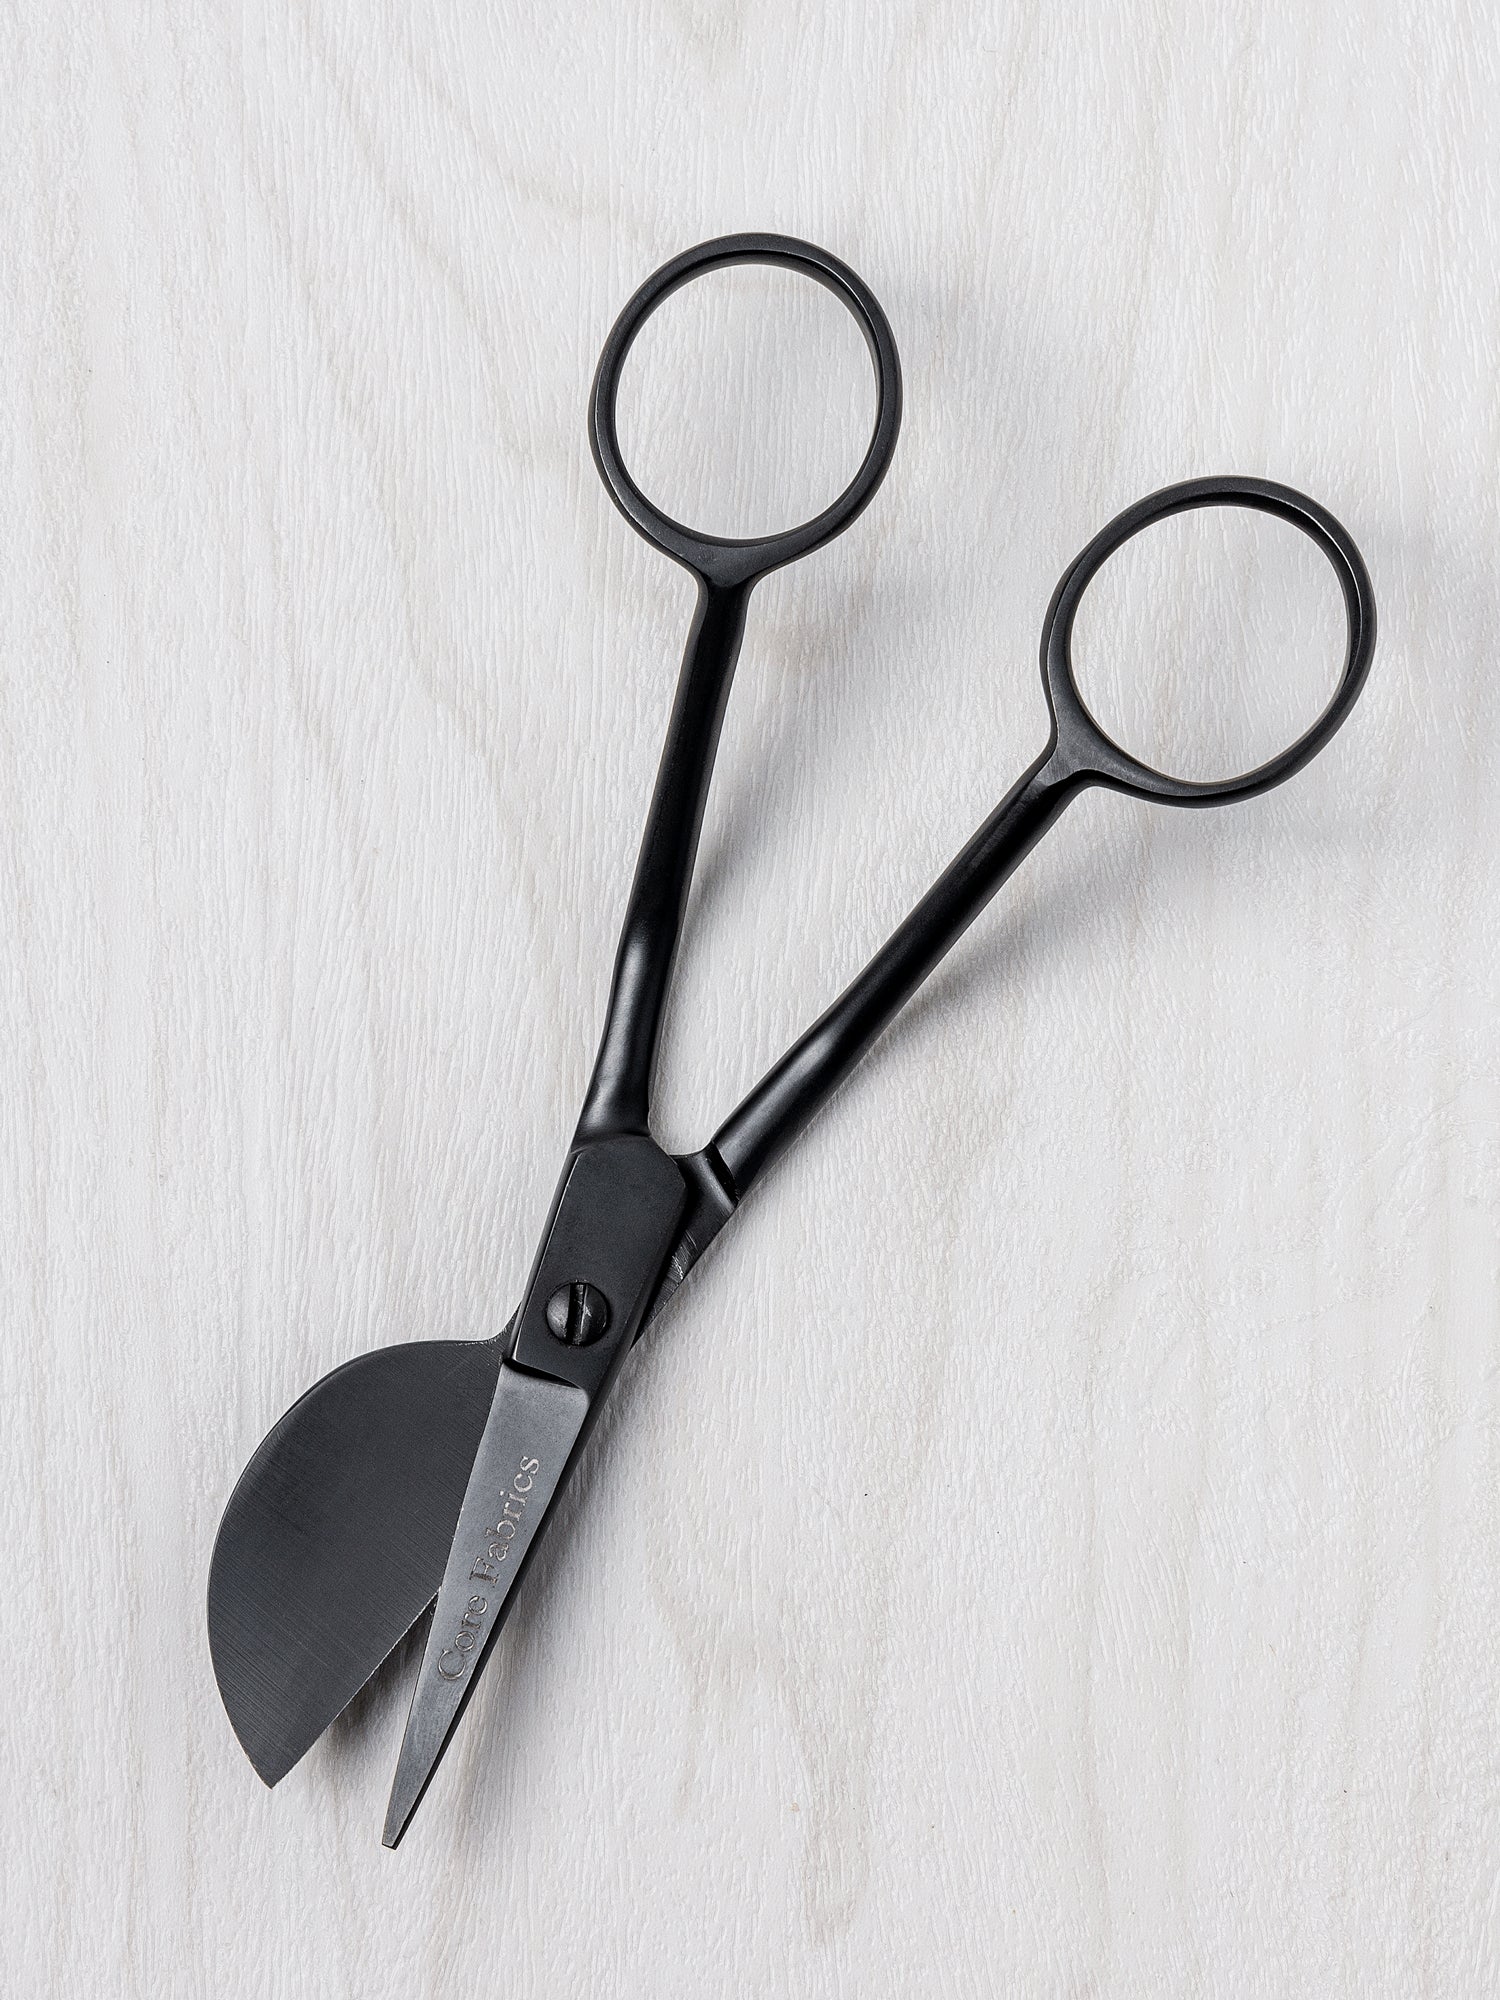 Bnjfv Tufting Carpet Scissors, Mini Portable Stainless Steel Duckbill Scissors For Cutting Carpet(black)